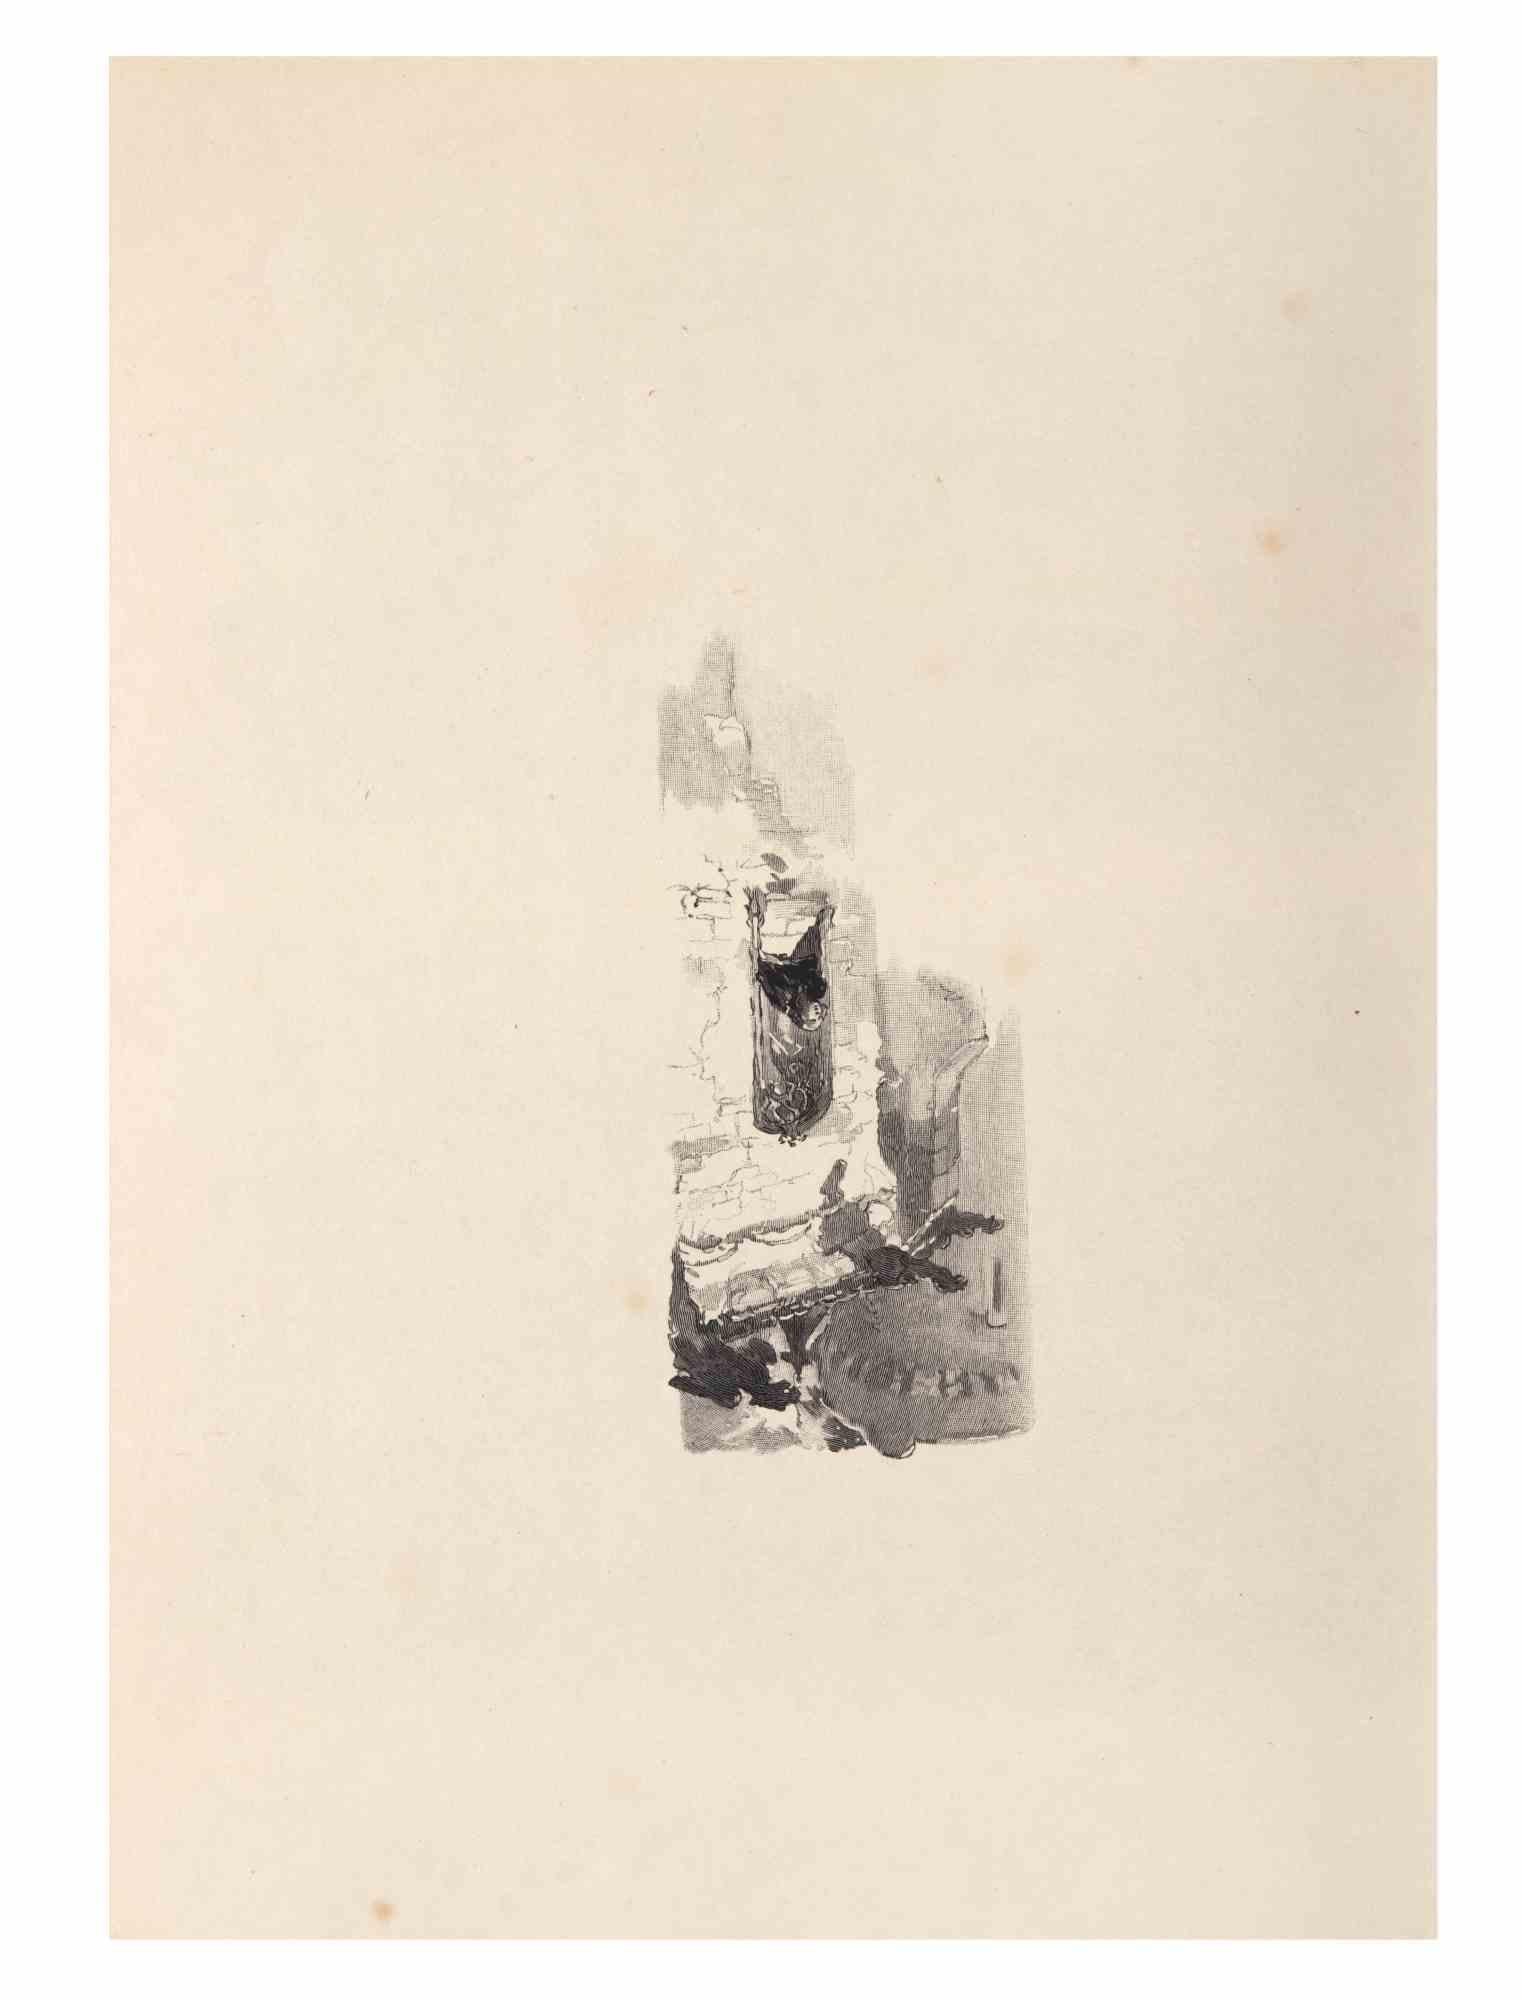 Petits Contes à ma Sœur ist eine Lithographie auf Papier von Hégésippe Moreau aus dem Jahr 1838.

Das Kunstwerk ist in gutem Zustand.

Hégésippe Moreau (1810-1838) war ein französischer Lyriker. Der romantische Mythos wurde durch die